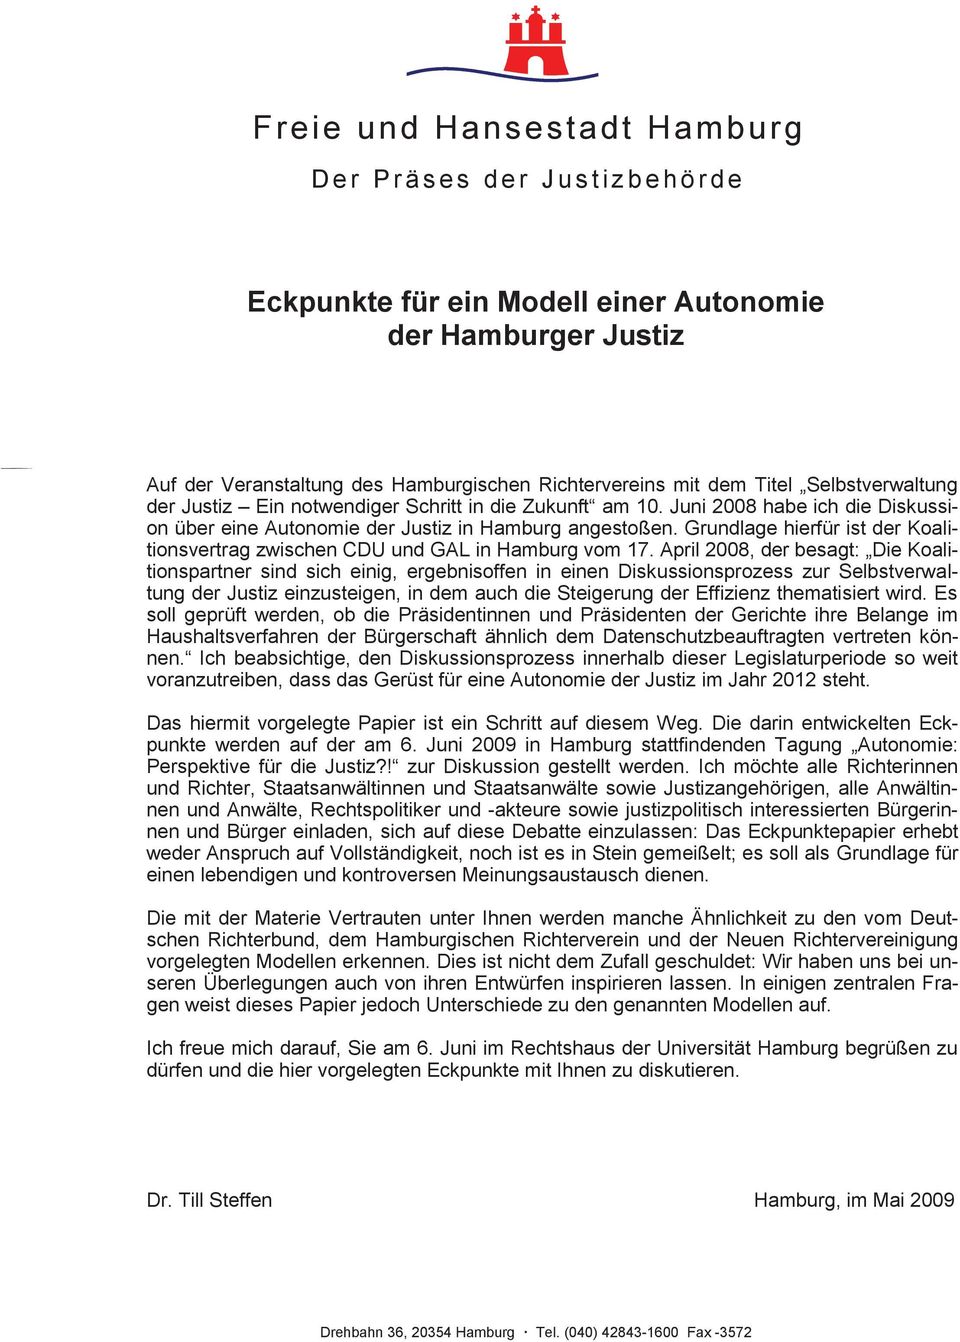 Grundlage hierfür ist der Koalitionsvertrag zwischen CDU und GAL in Hamburg vom 17.